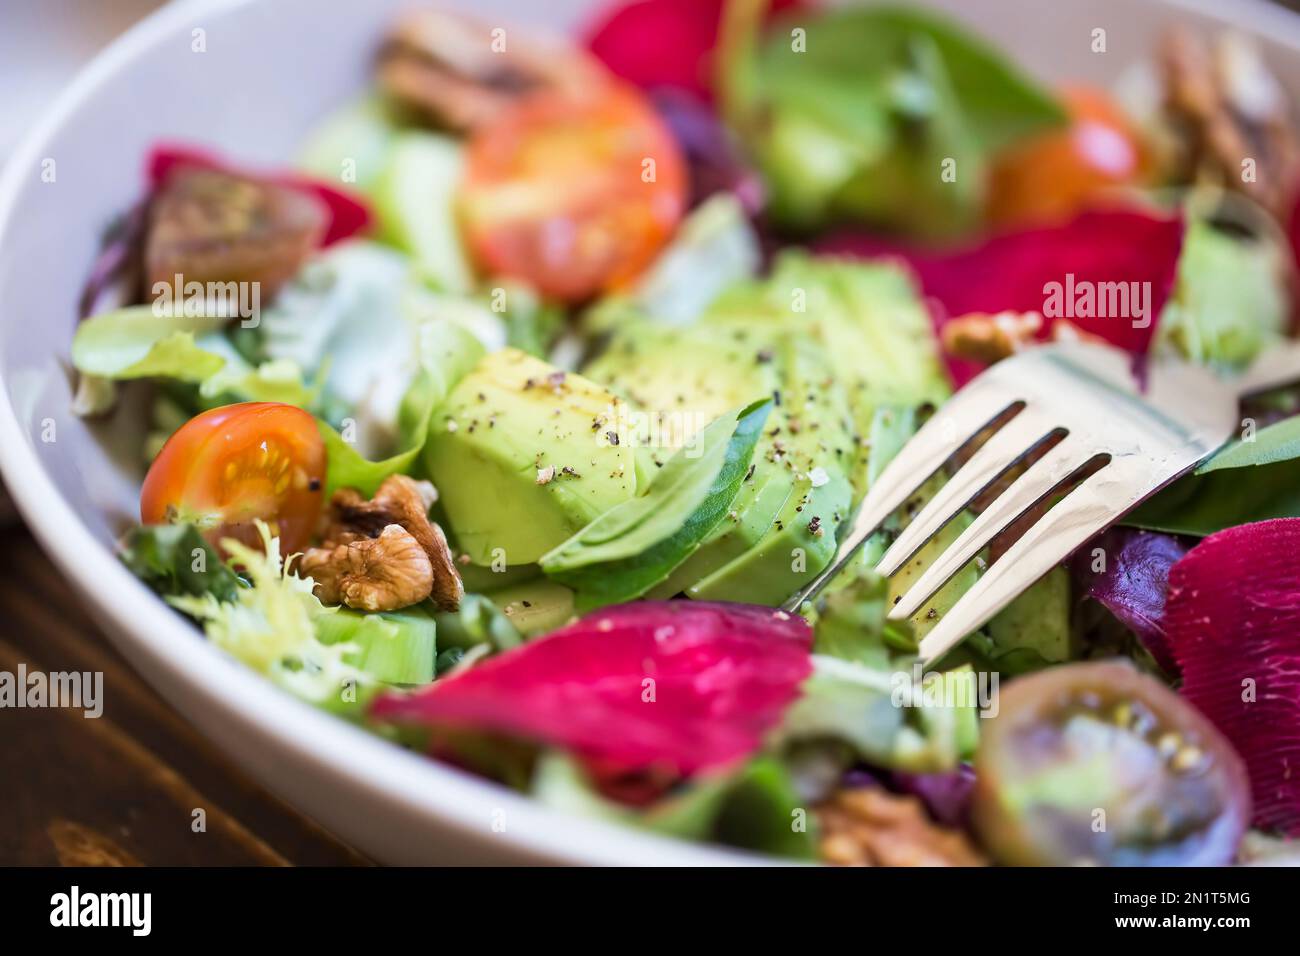 Salade d'été fraîche avec avocat, laitue, betterave, noix et graines. Salade végétalienne saine d'été sur une table en bois, manger propre Banque D'Images